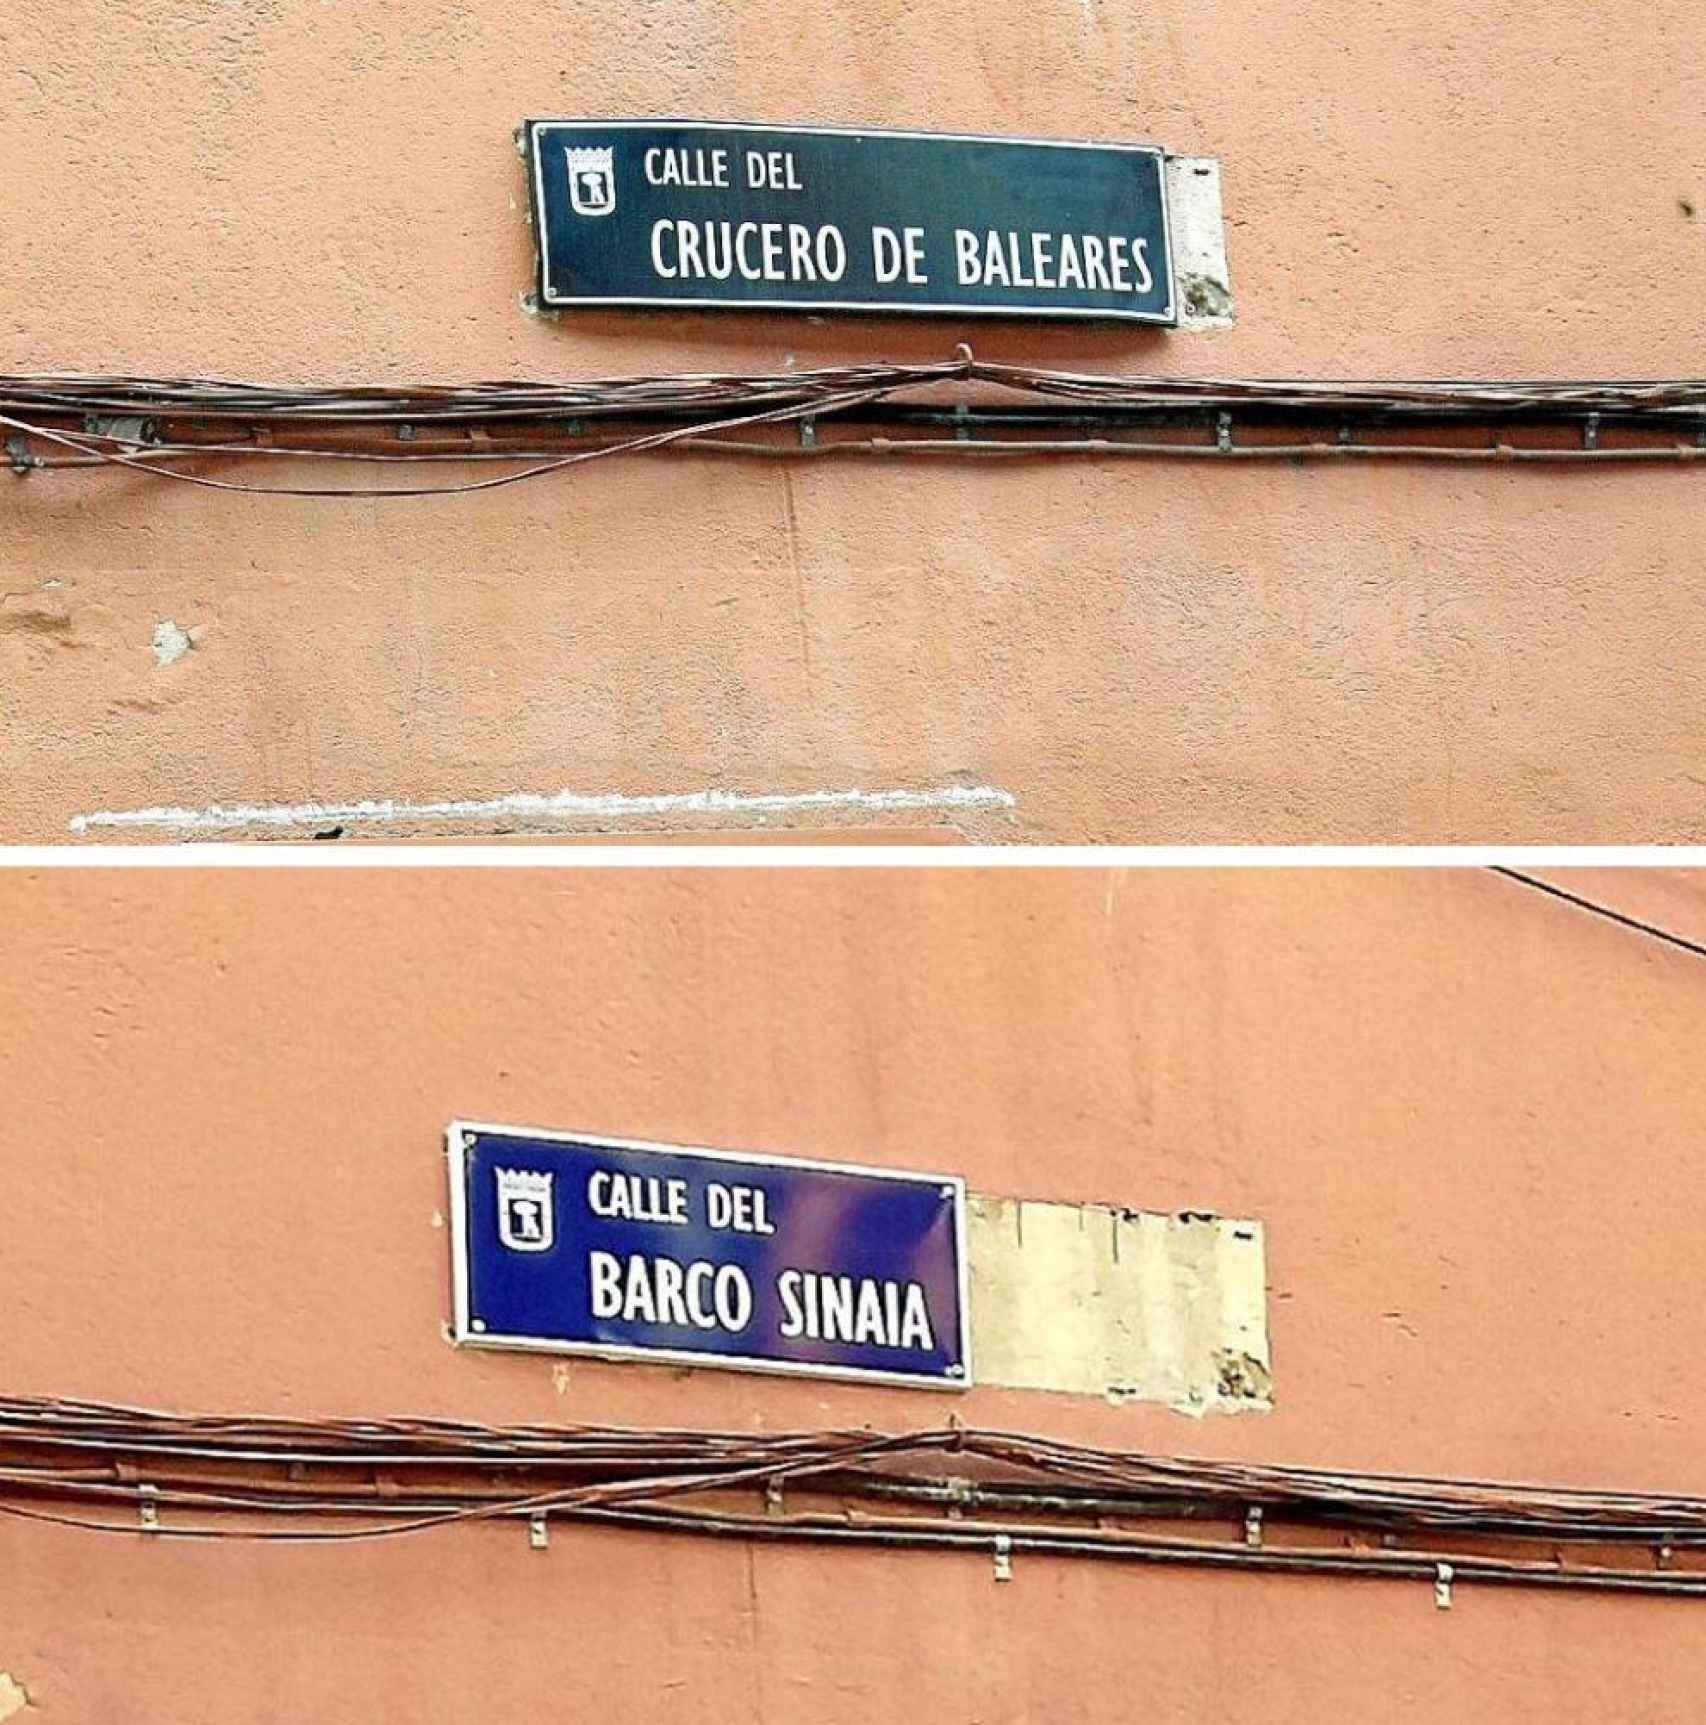 La calle Barco Sinaia ha cambiado de nombre por el de Crucero de Baleares.